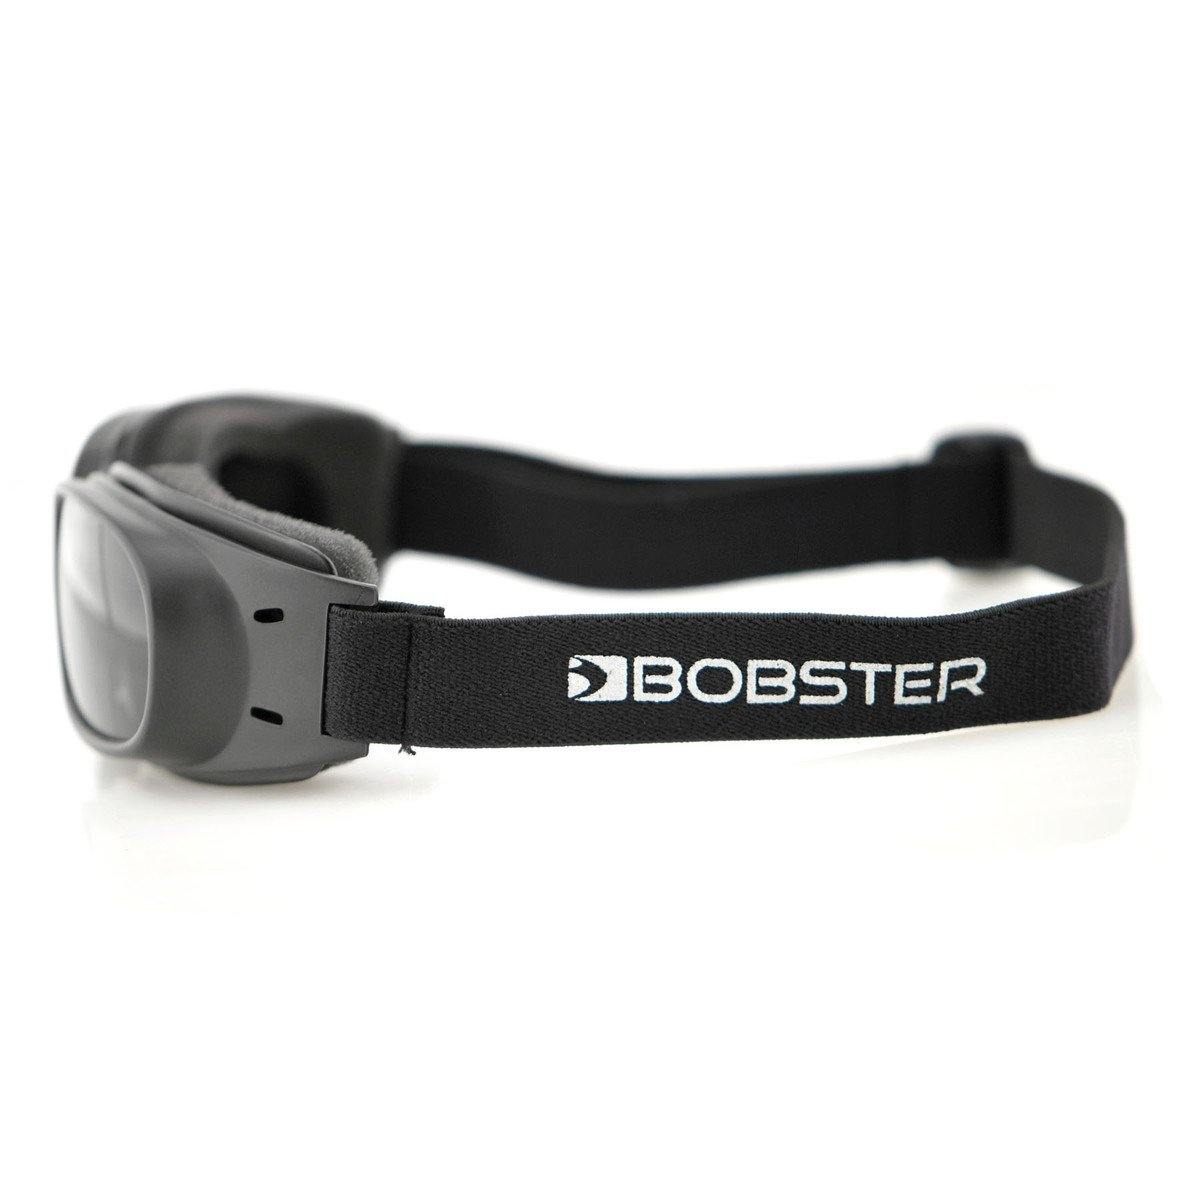 Bobster Piston Goggle - American Legend Rider